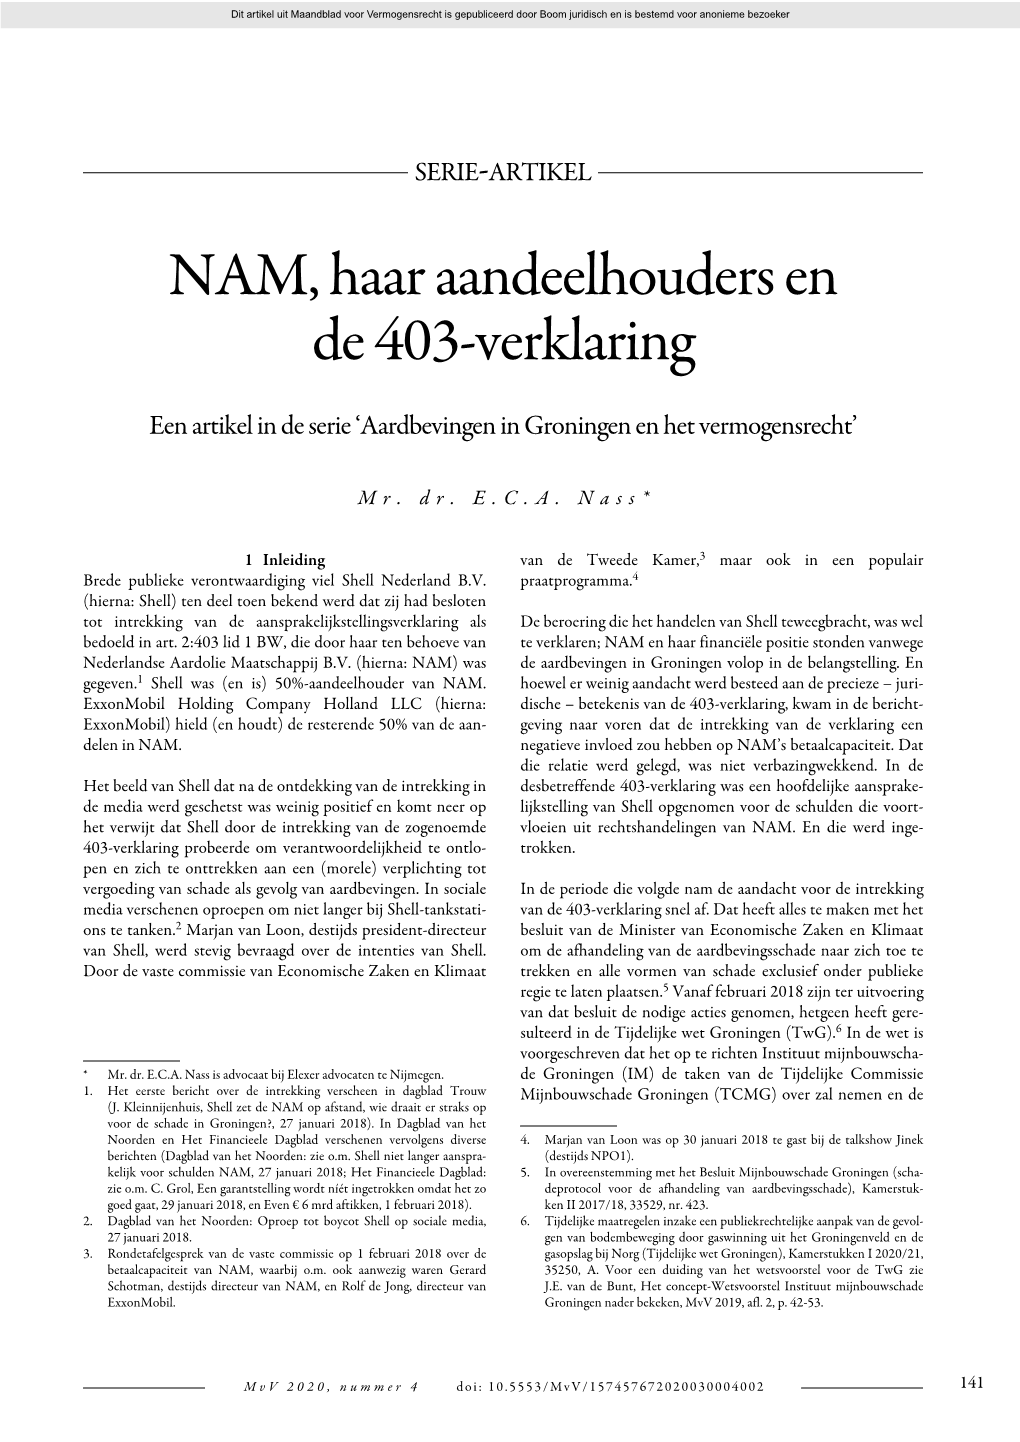 NAM, Haar Aandeelhouders En De 403-Verklaring